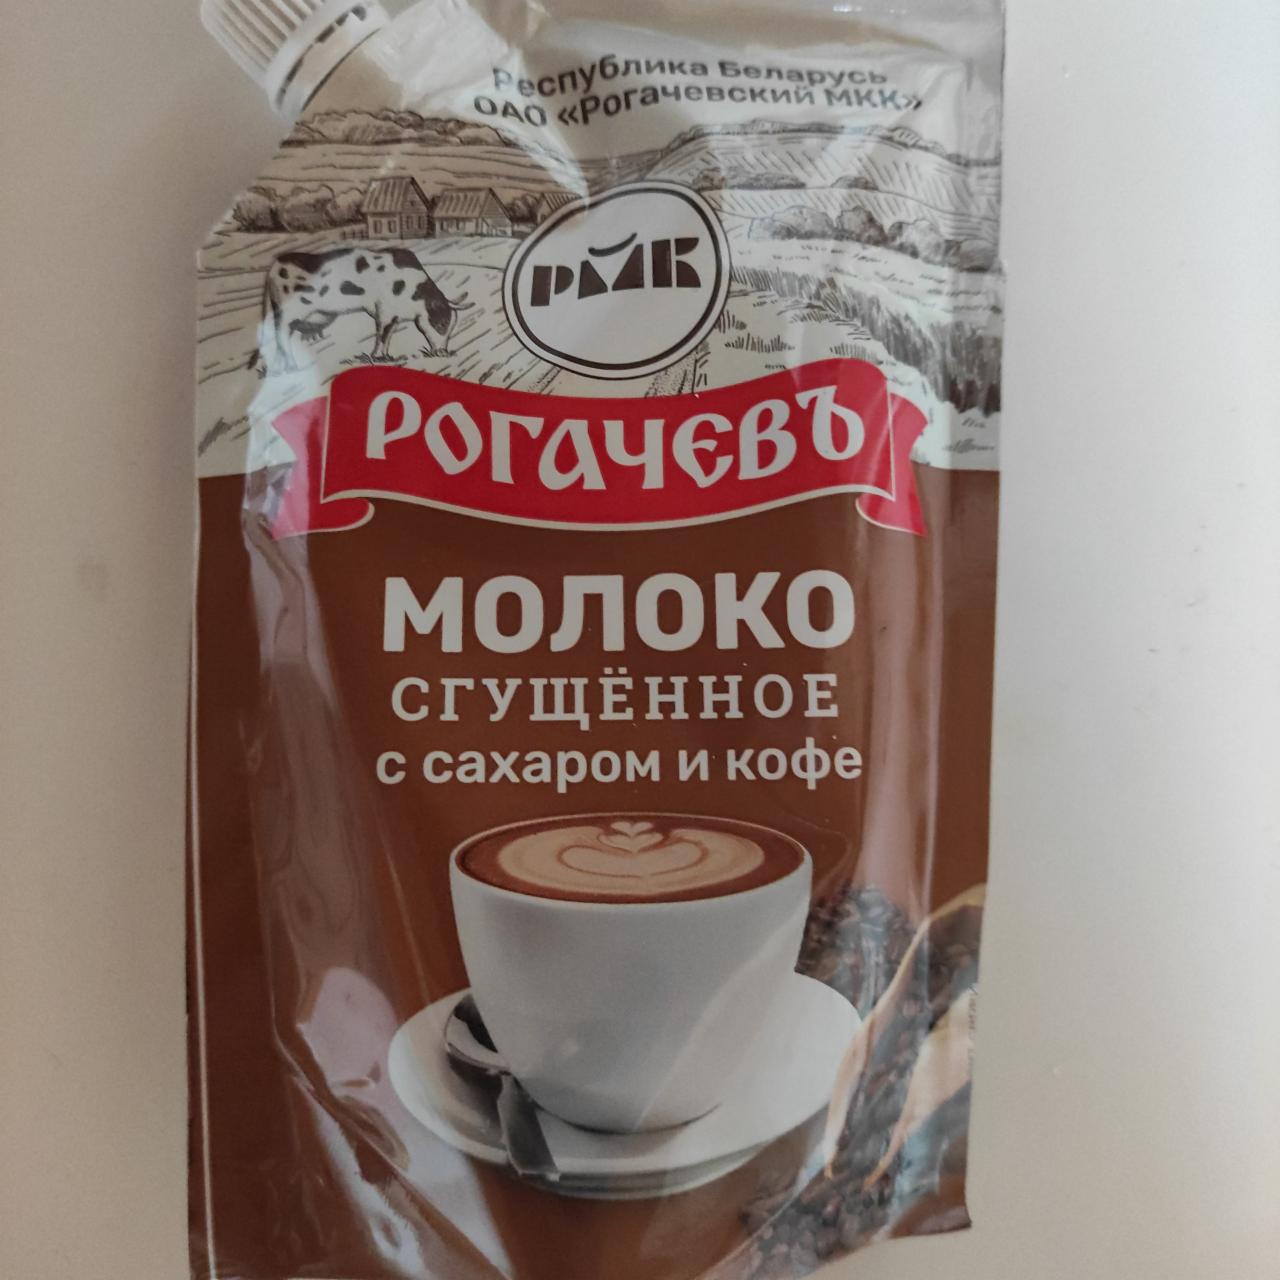 Фото - Молоко сгущенное с сахаром и кофе Рогачевъ